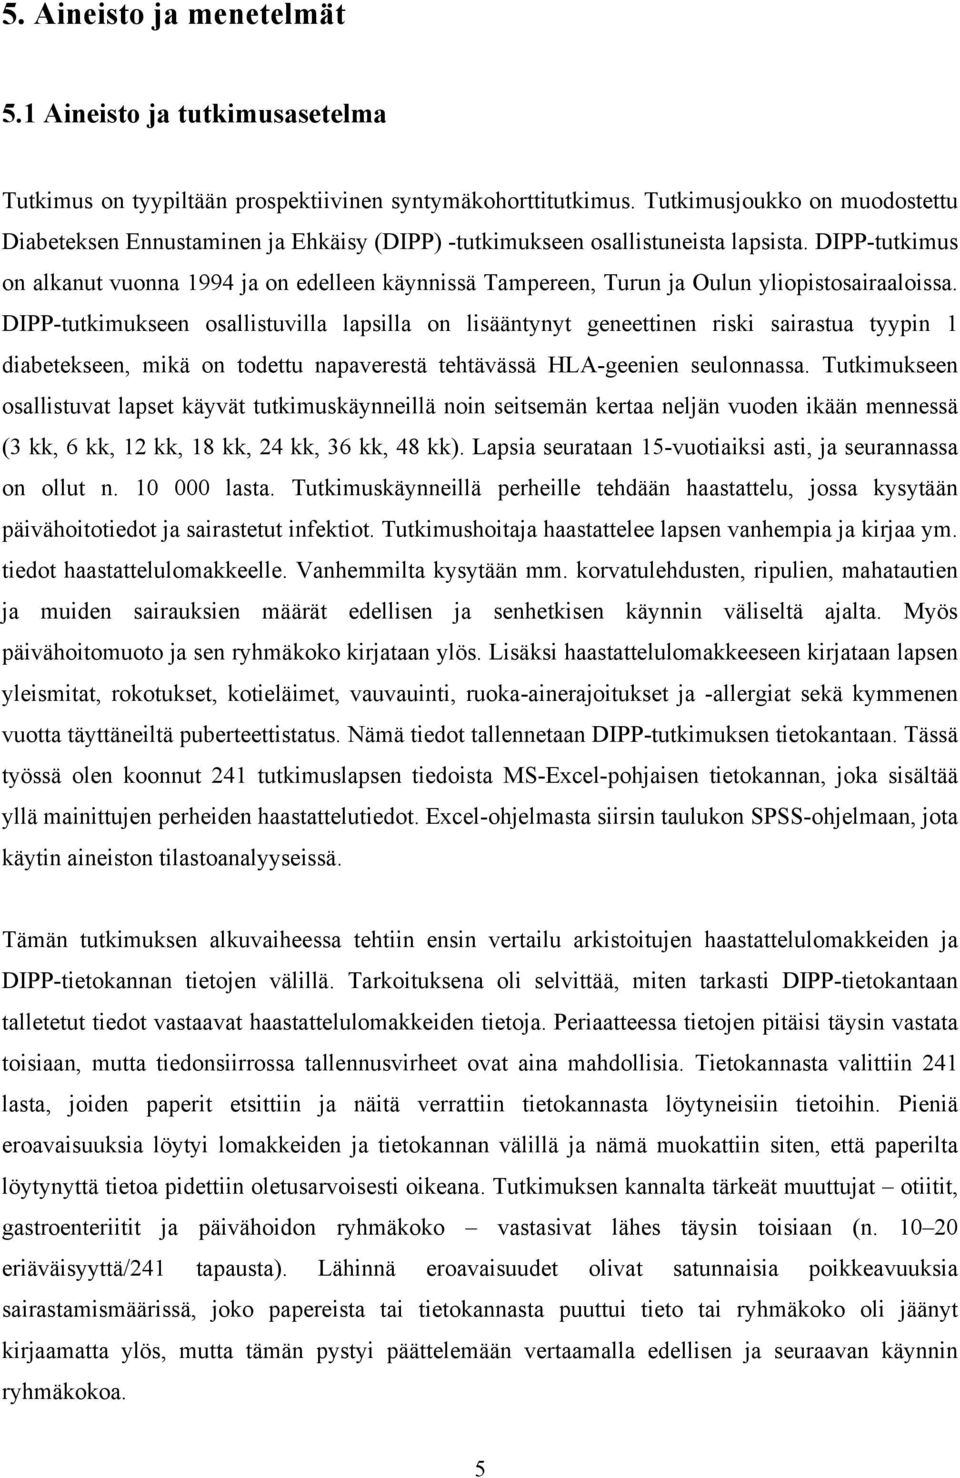 DIPP-tutkimus on alkanut vuonna 1994 ja on edelleen käynnissä Tampereen, Turun ja Oulun yliopistosairaaloissa.